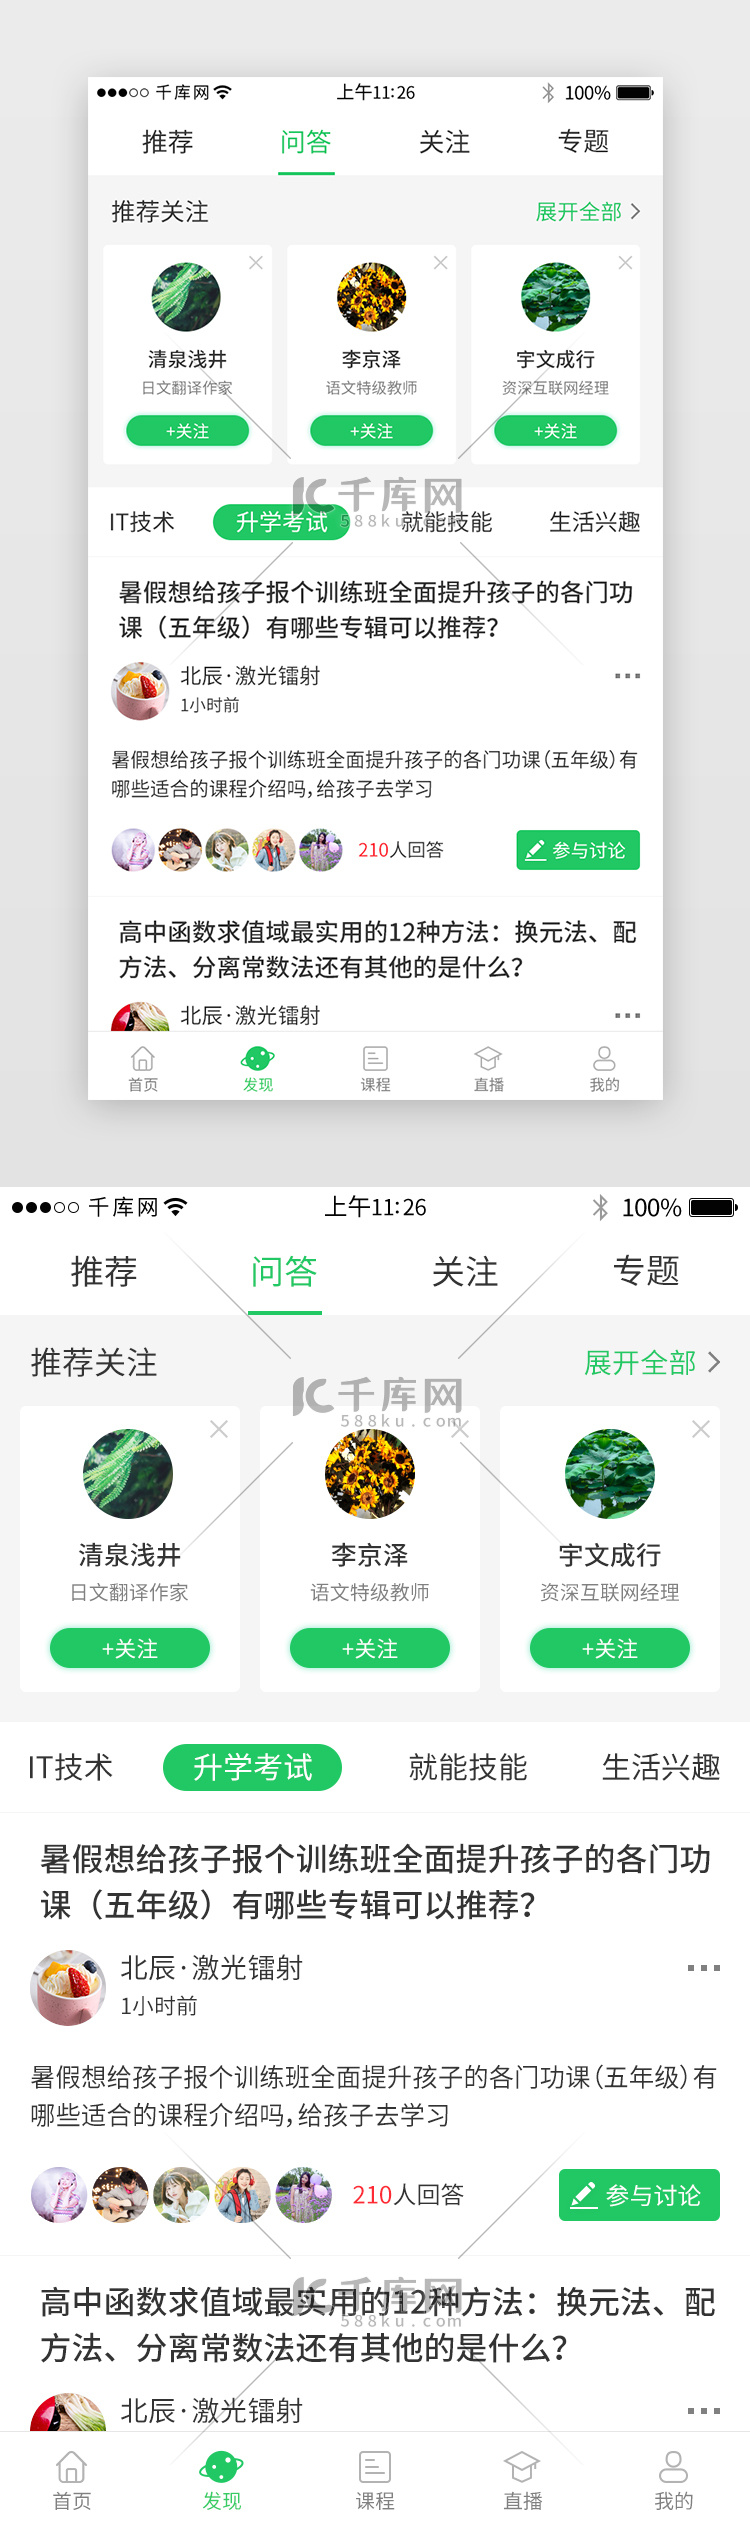 绿色系教育培训app界面模板